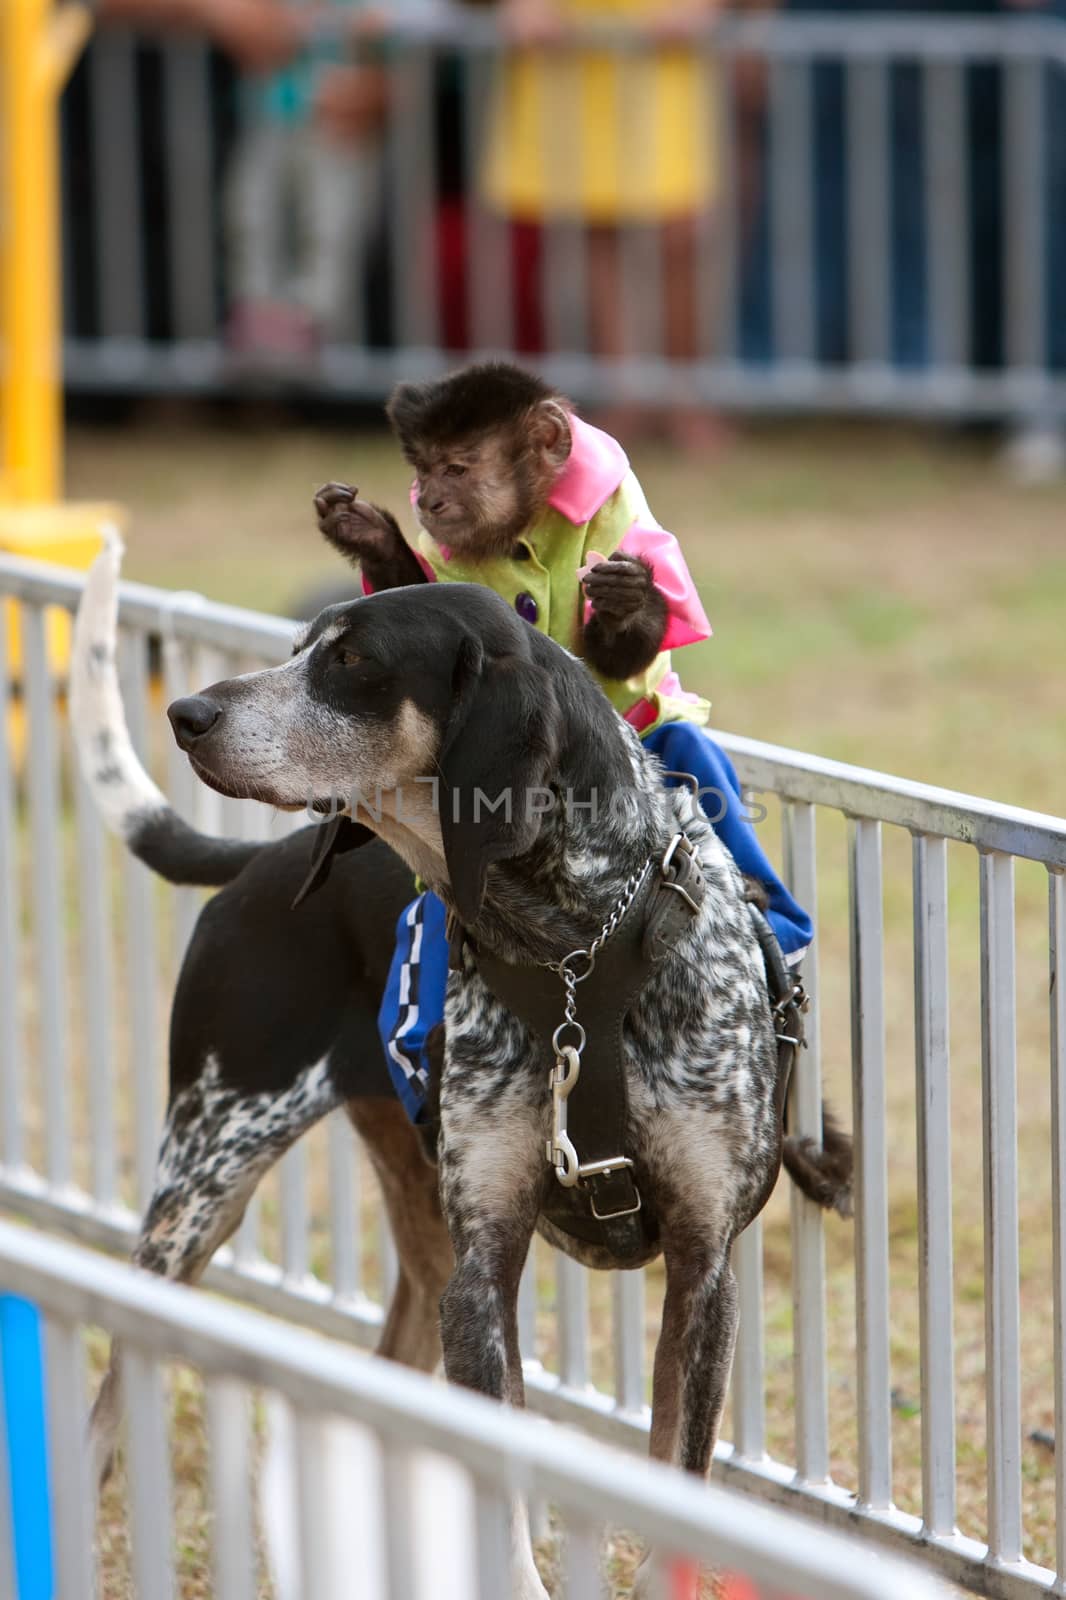 Monkey Rides Dog At State Fair by BluIz60